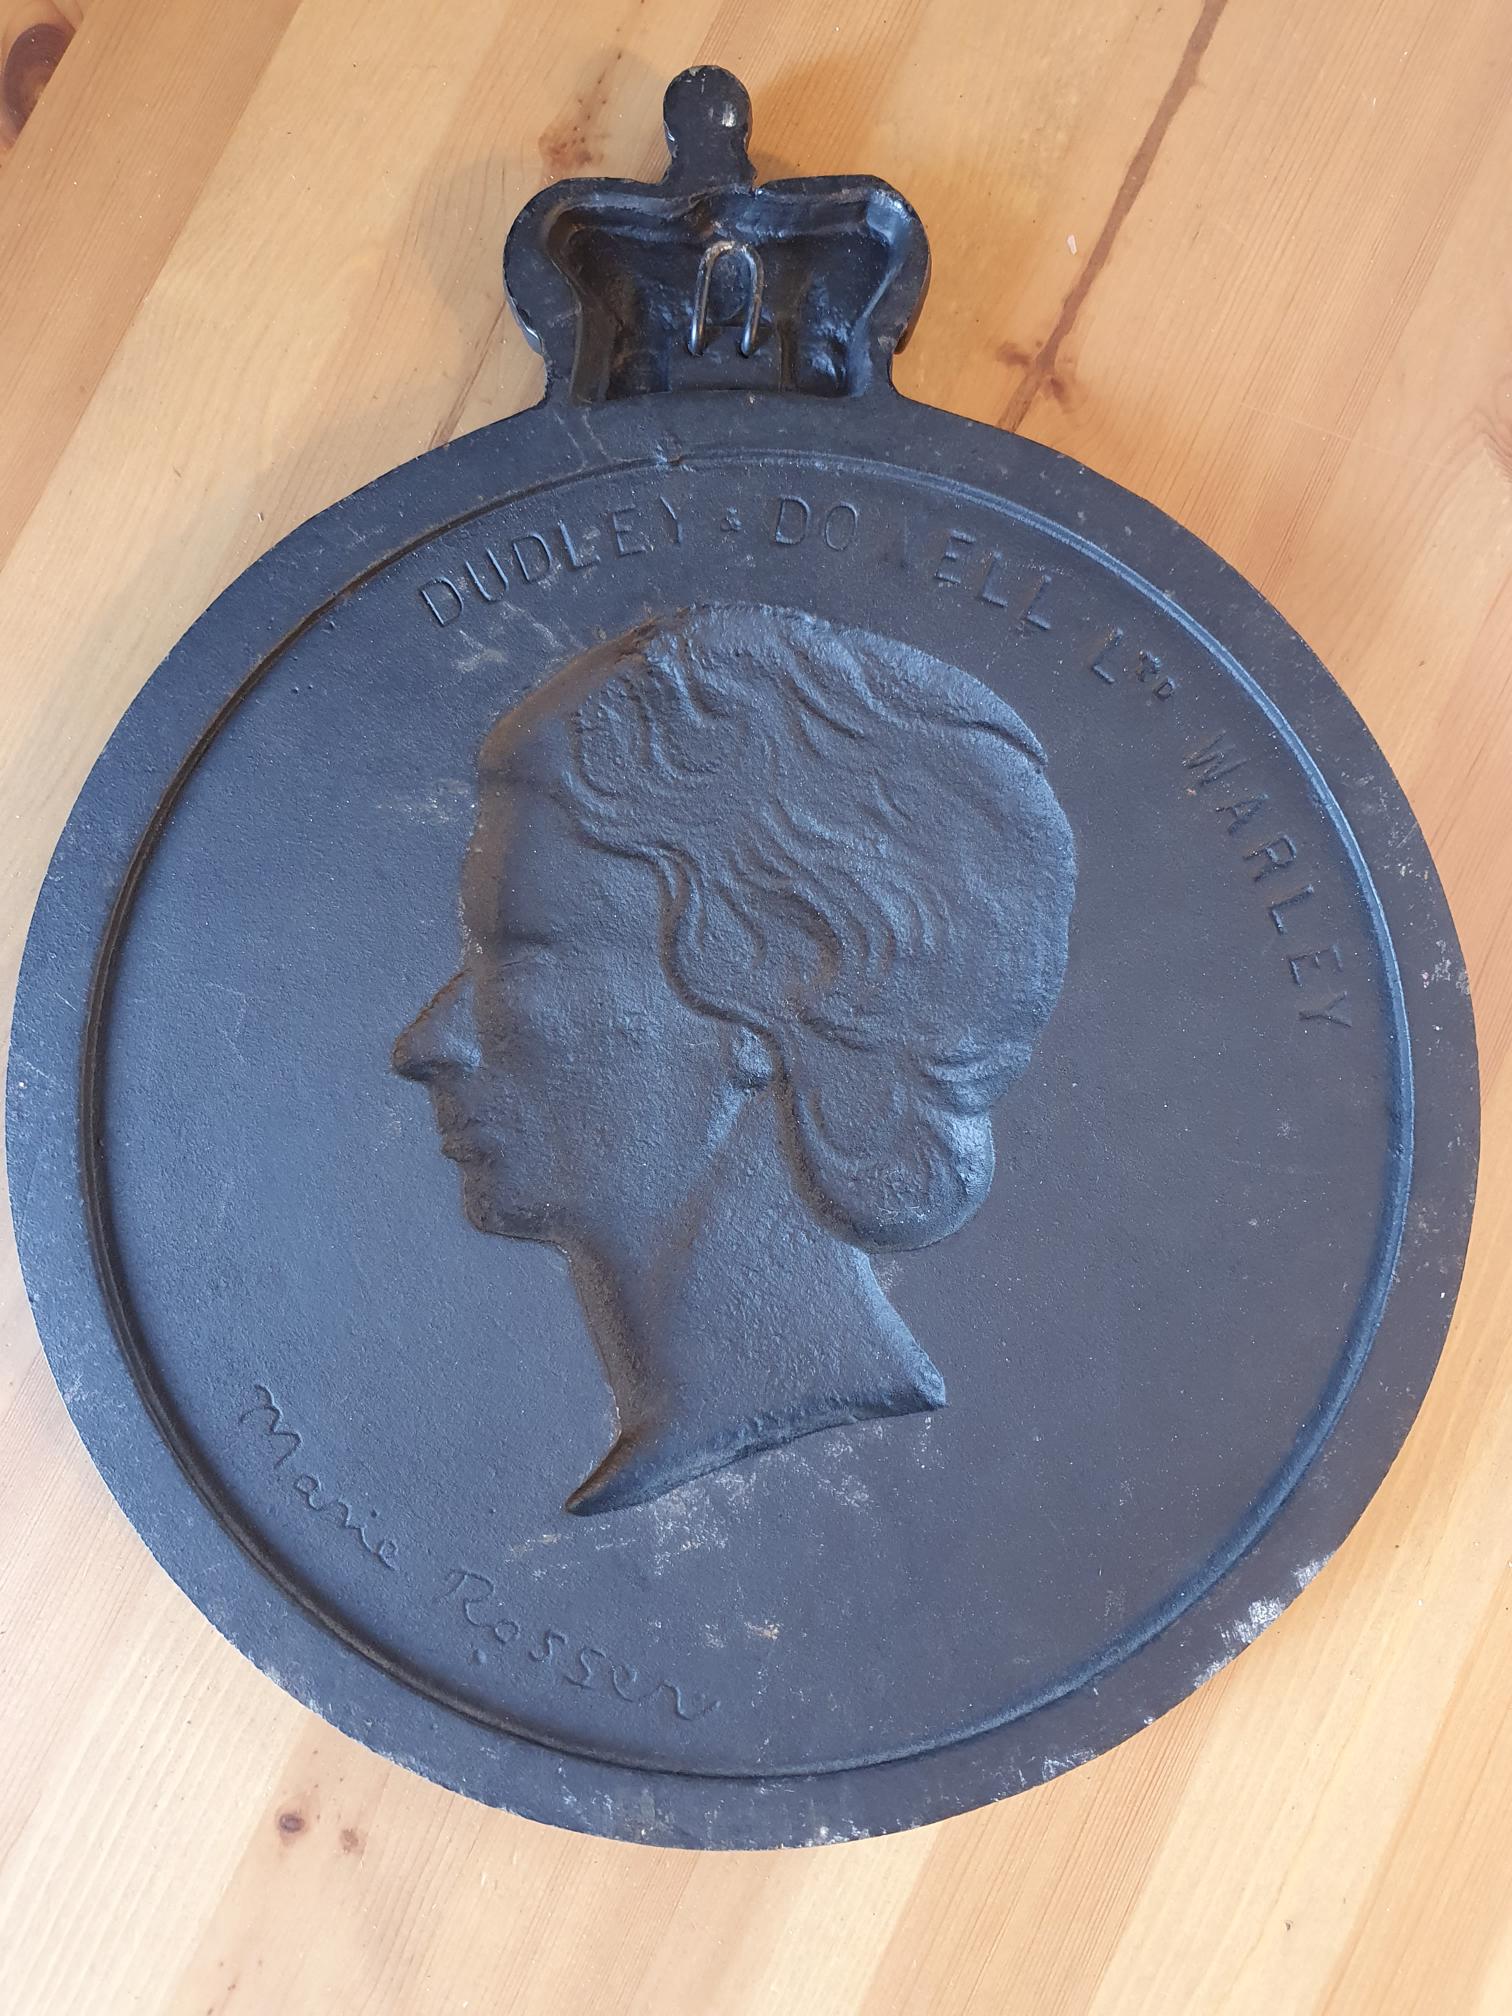 Queen Elizabeth II Silver Jubilee Cast Iron plaque - Image 2 of 4